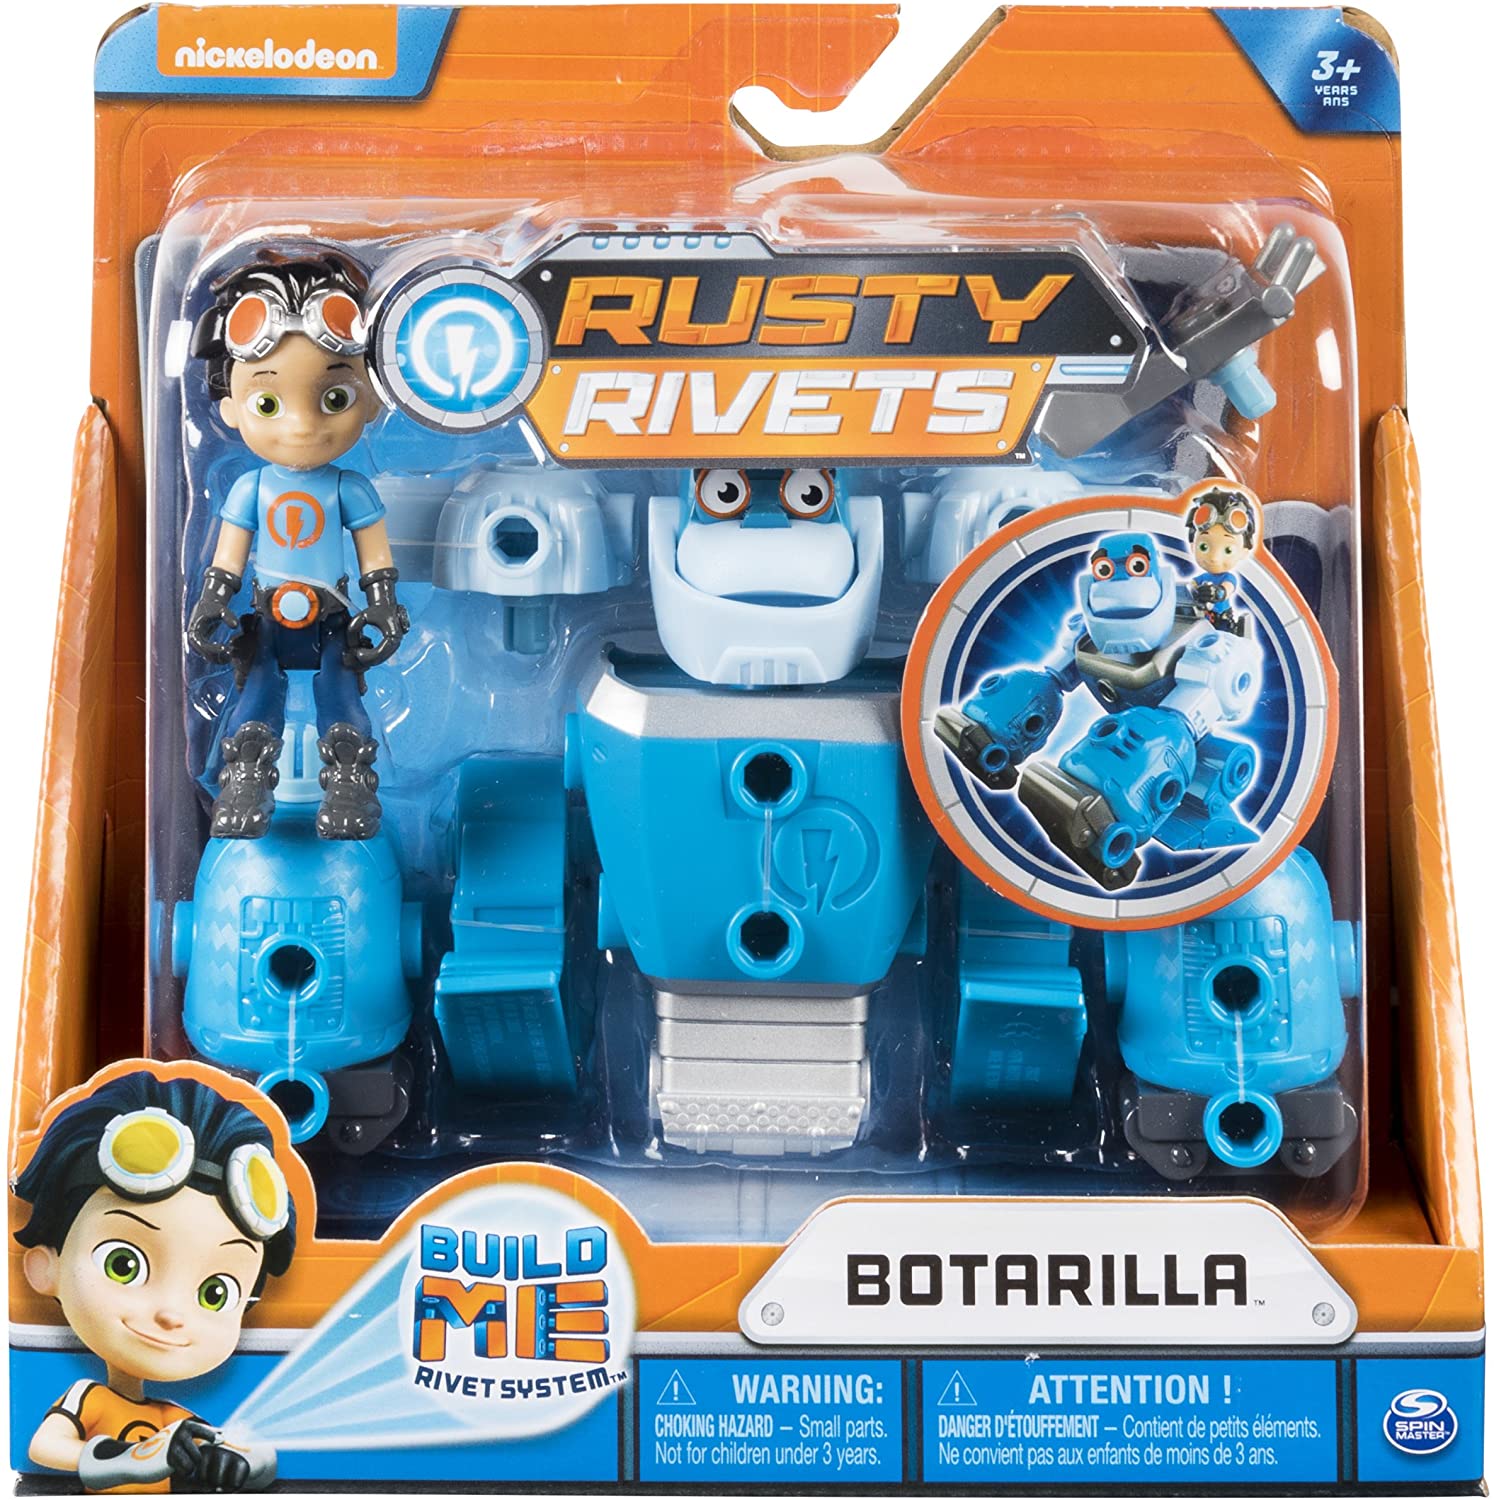 Bộ đồ chơi lắp ráp Rusty Rivets - BotaRilla